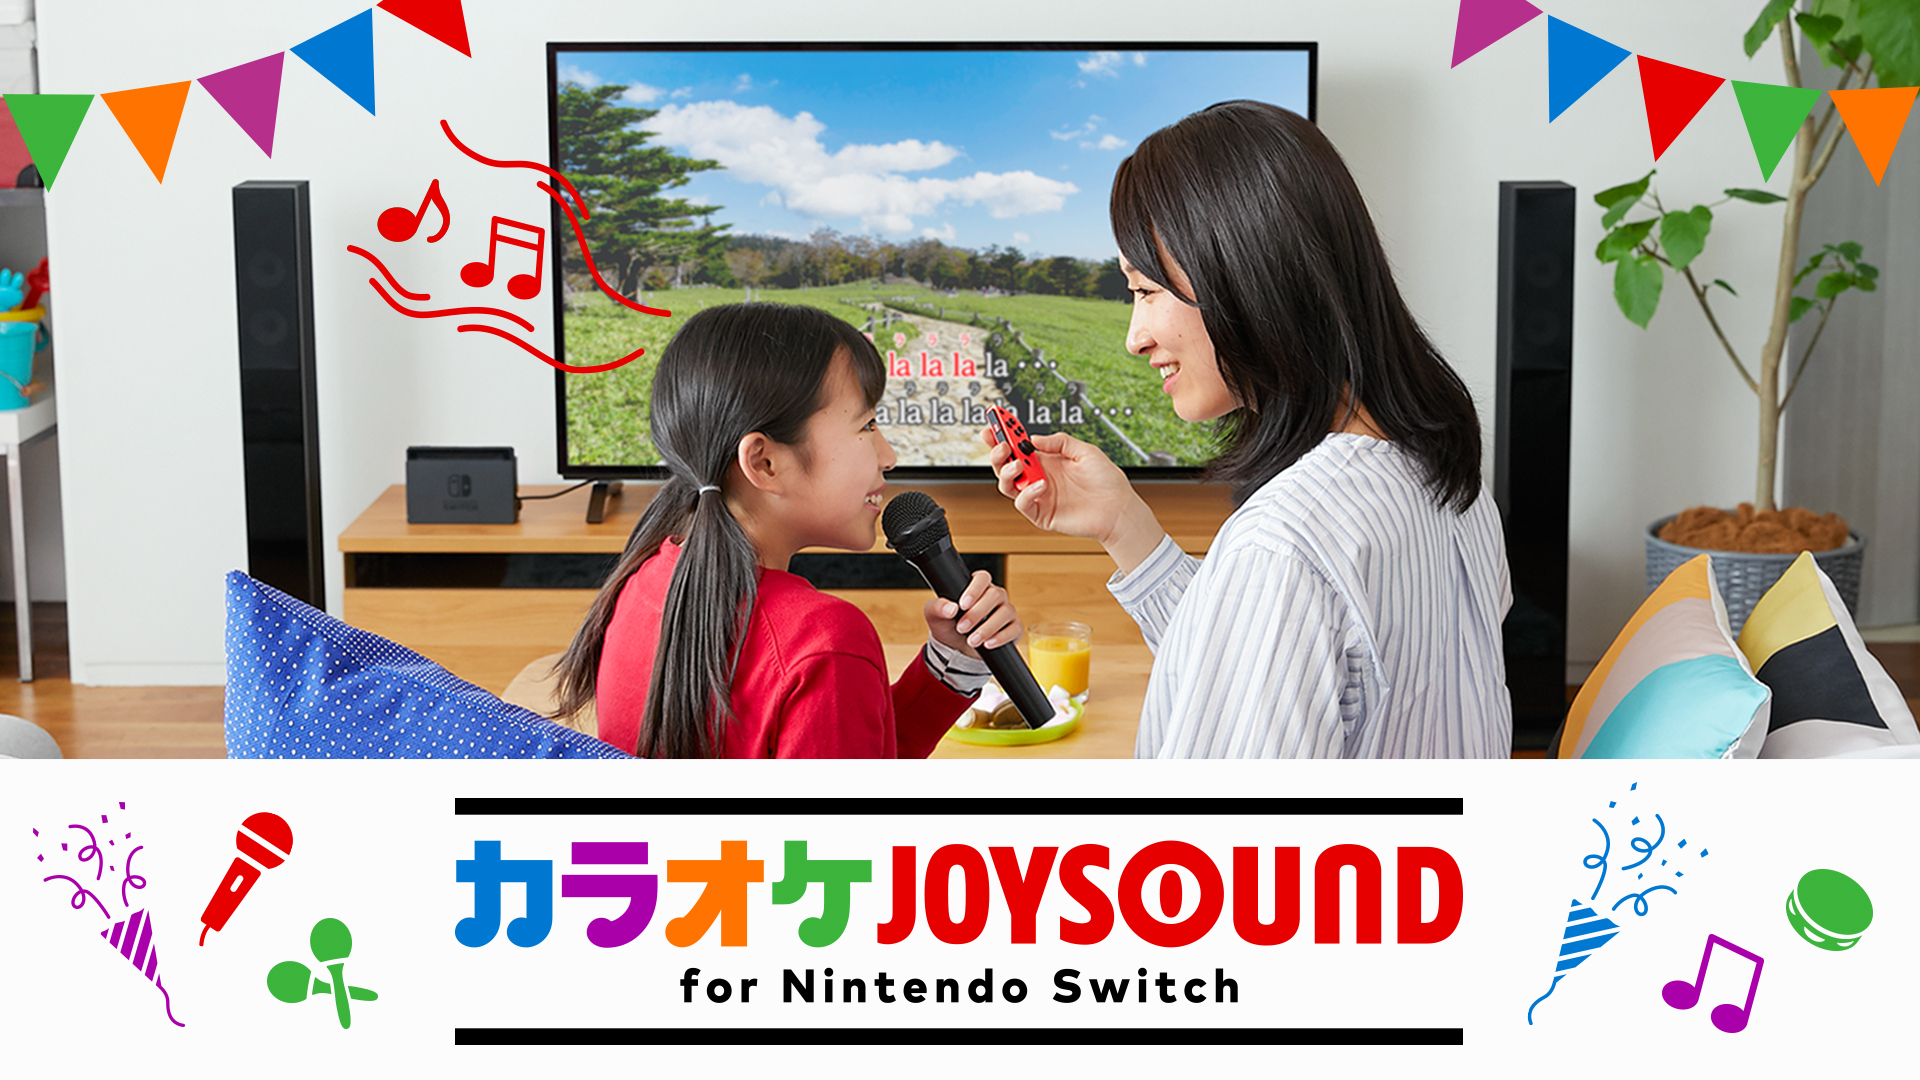 ソフト カラオケjoysound For Nintendo Switch Switchsoft ウィキ アットウィキ